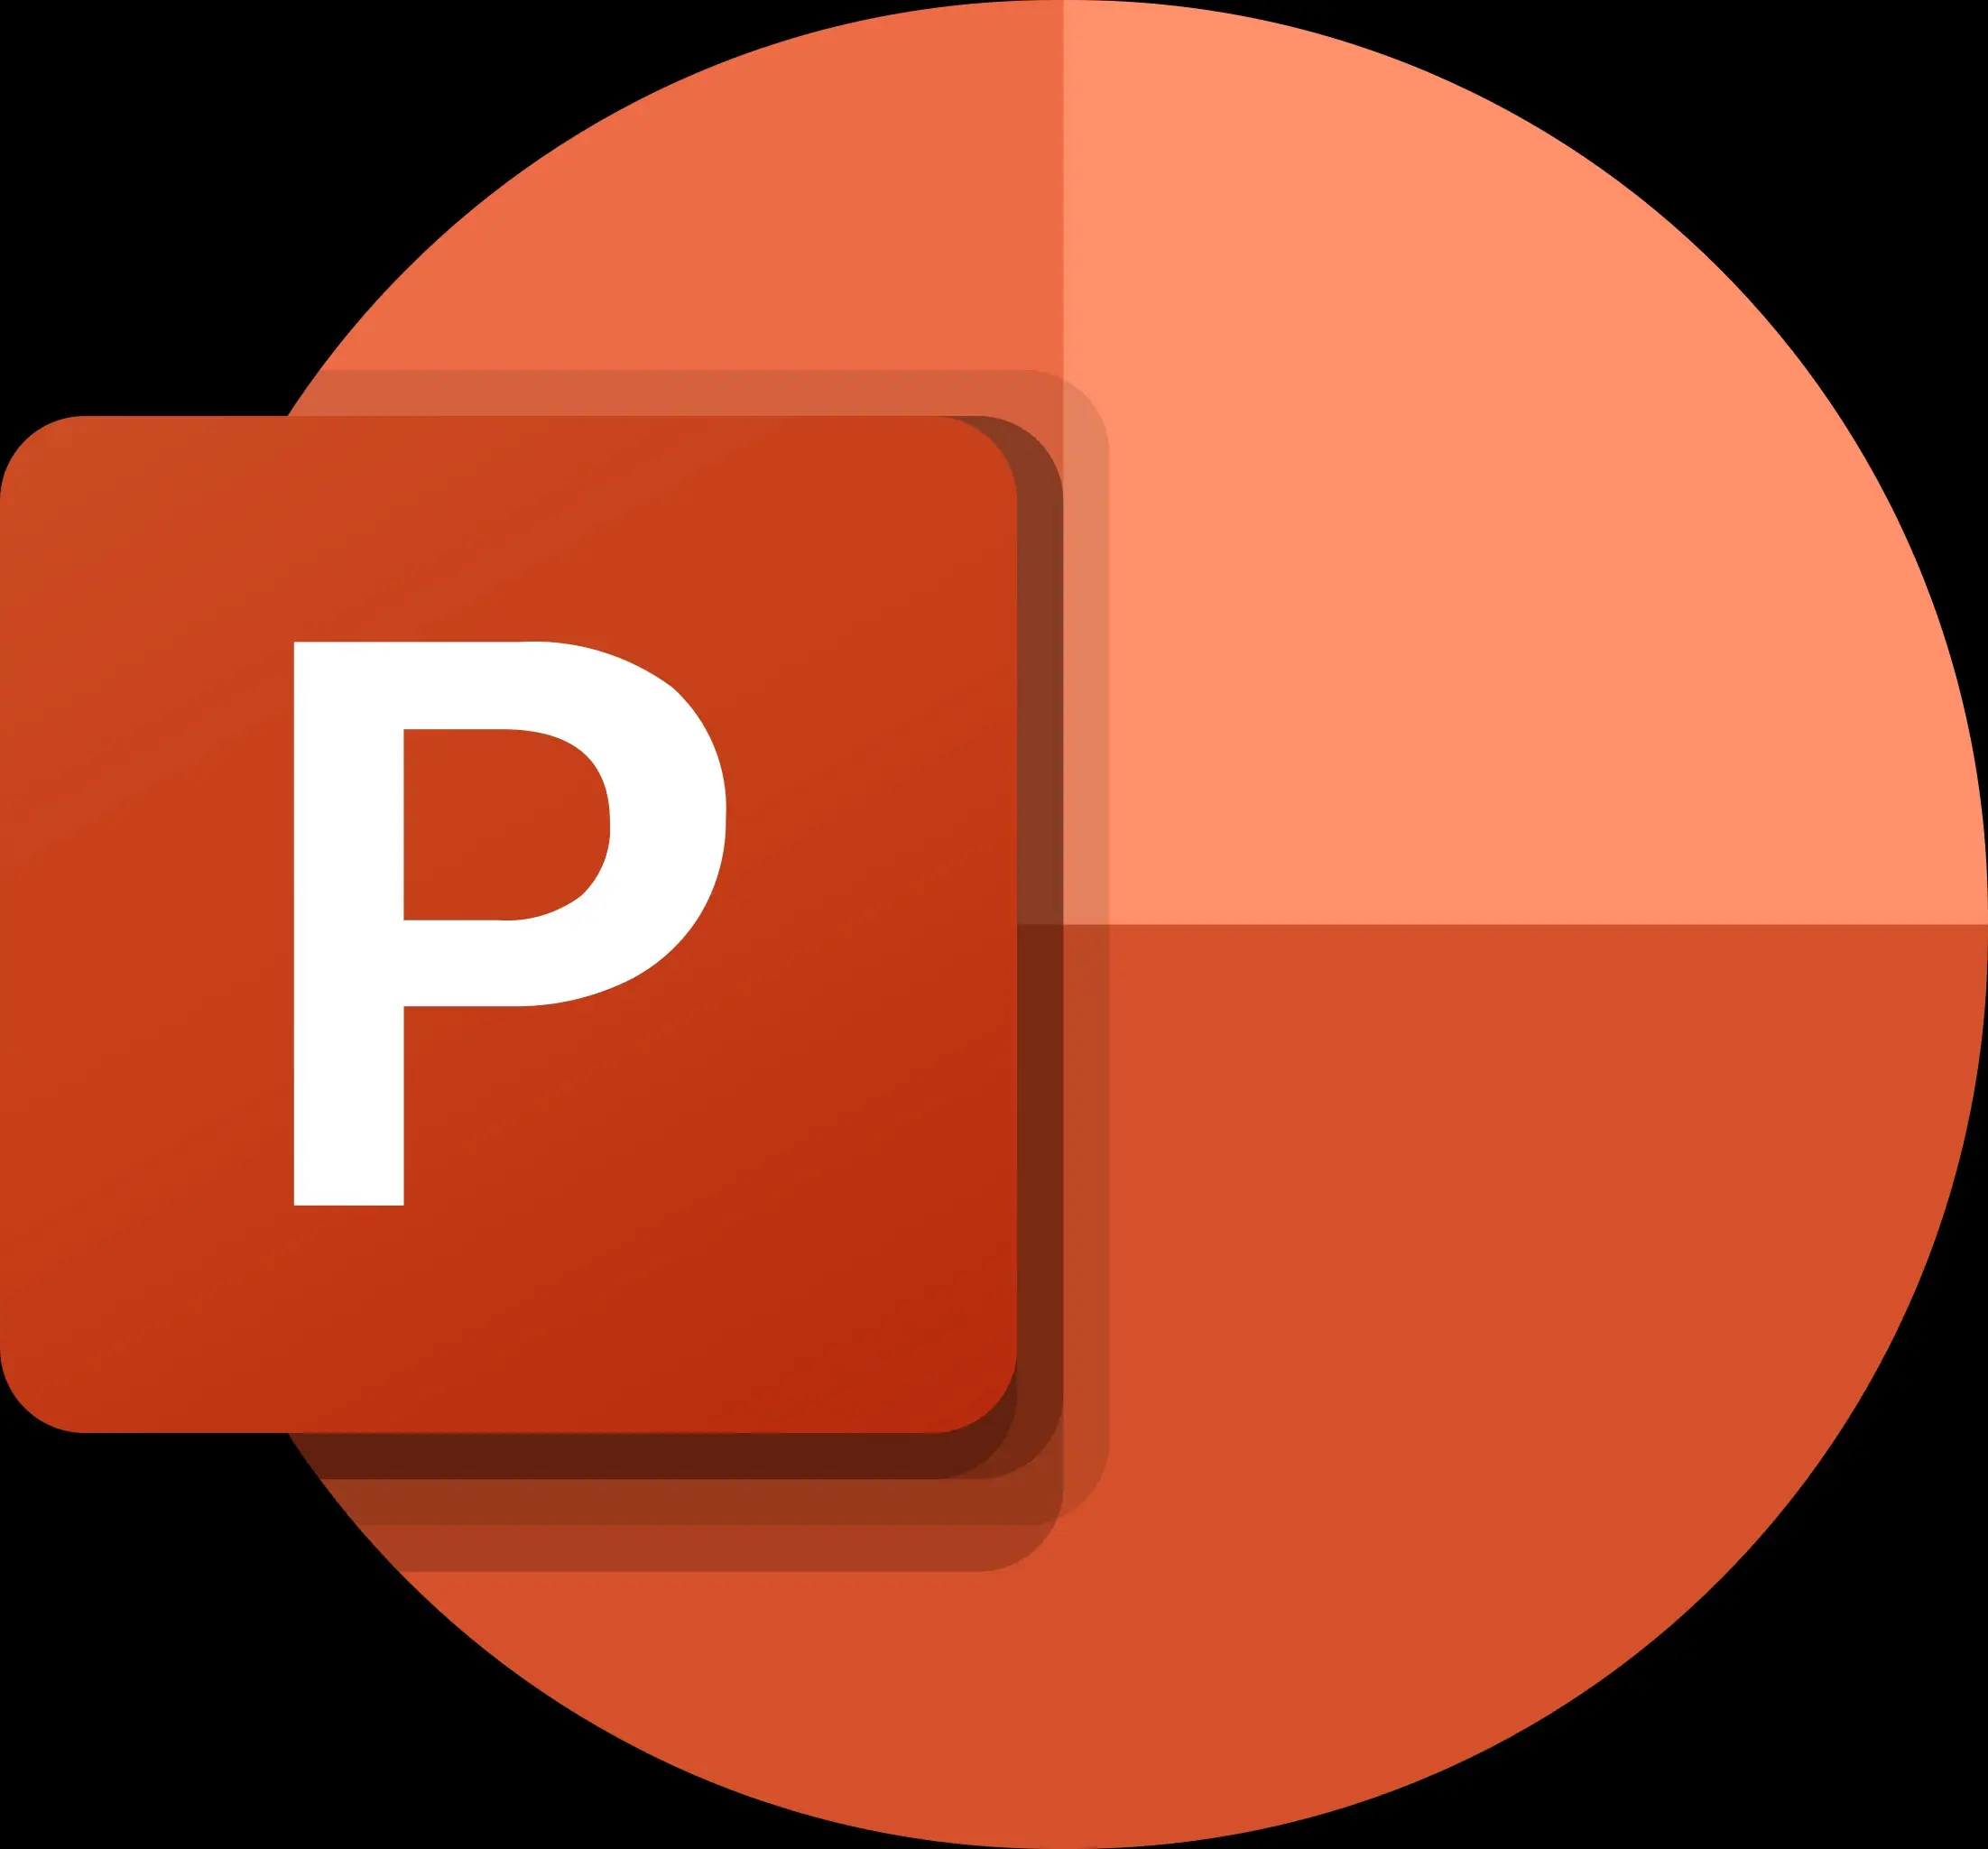 Microsoft Powerpoint 2019 – phần mềm thiết kế, chiếu slide thuyết trình